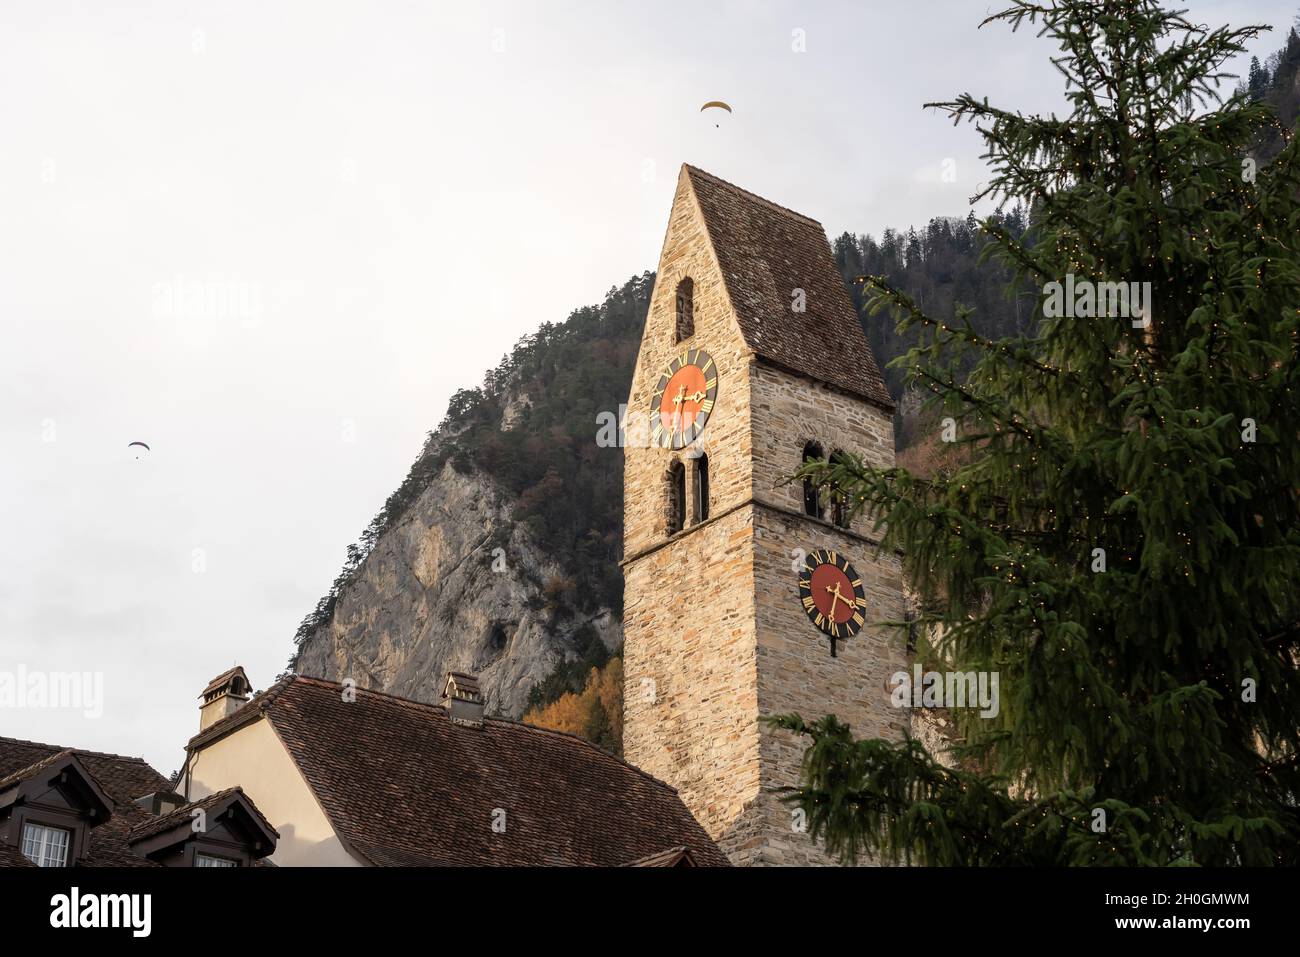 Tour de l'église Unterseen - Interlaken, Suisse Banque D'Images